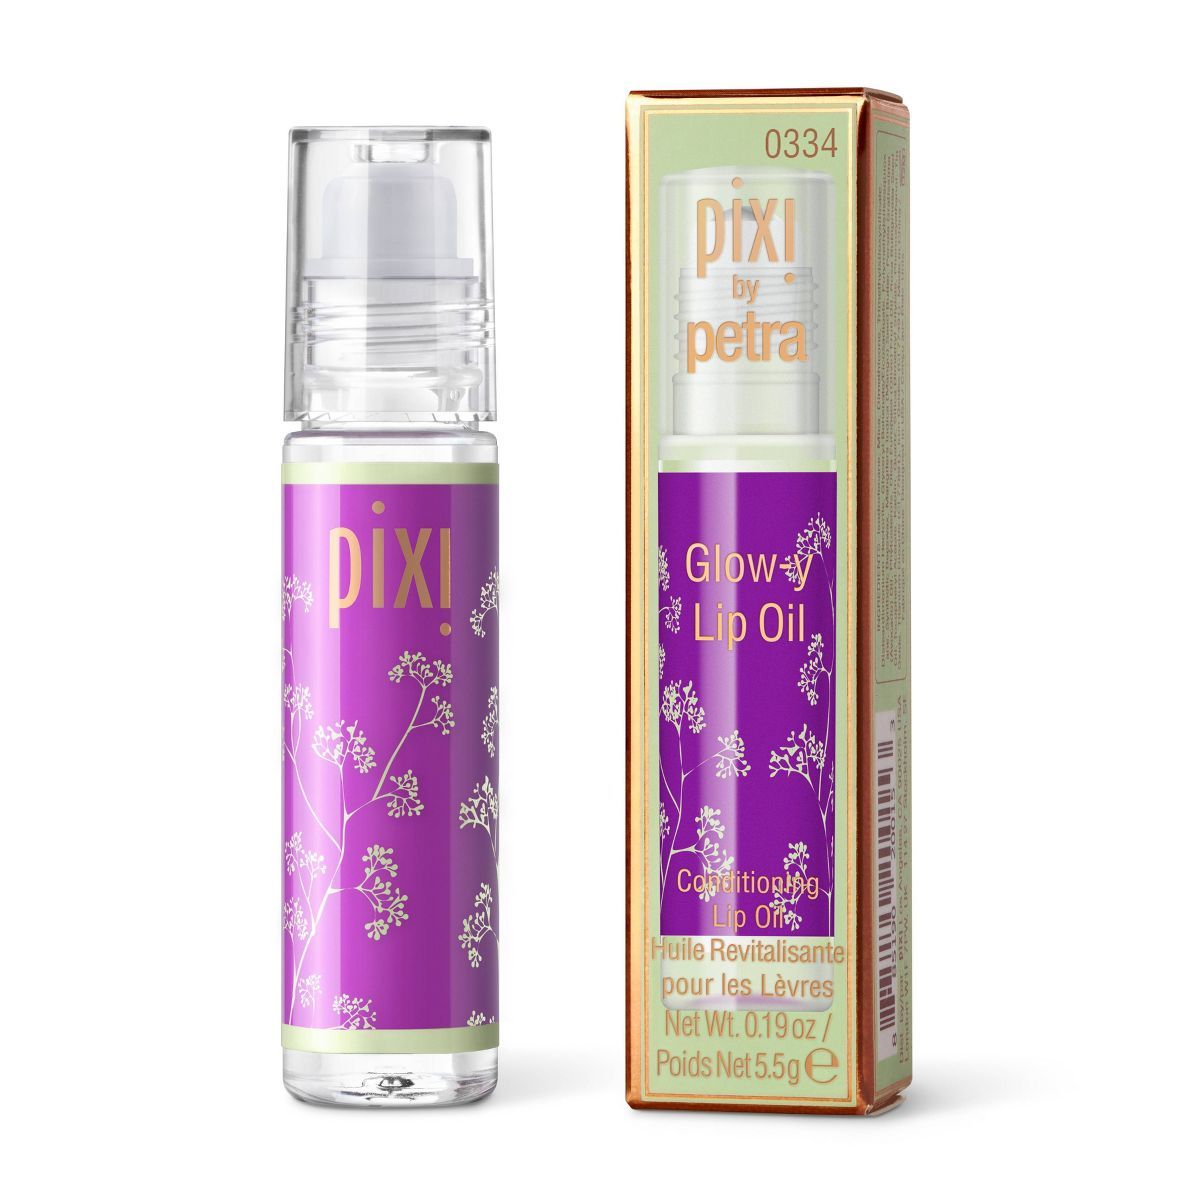 Pixi Glow-y Lip Oil - 0.26oz | Target